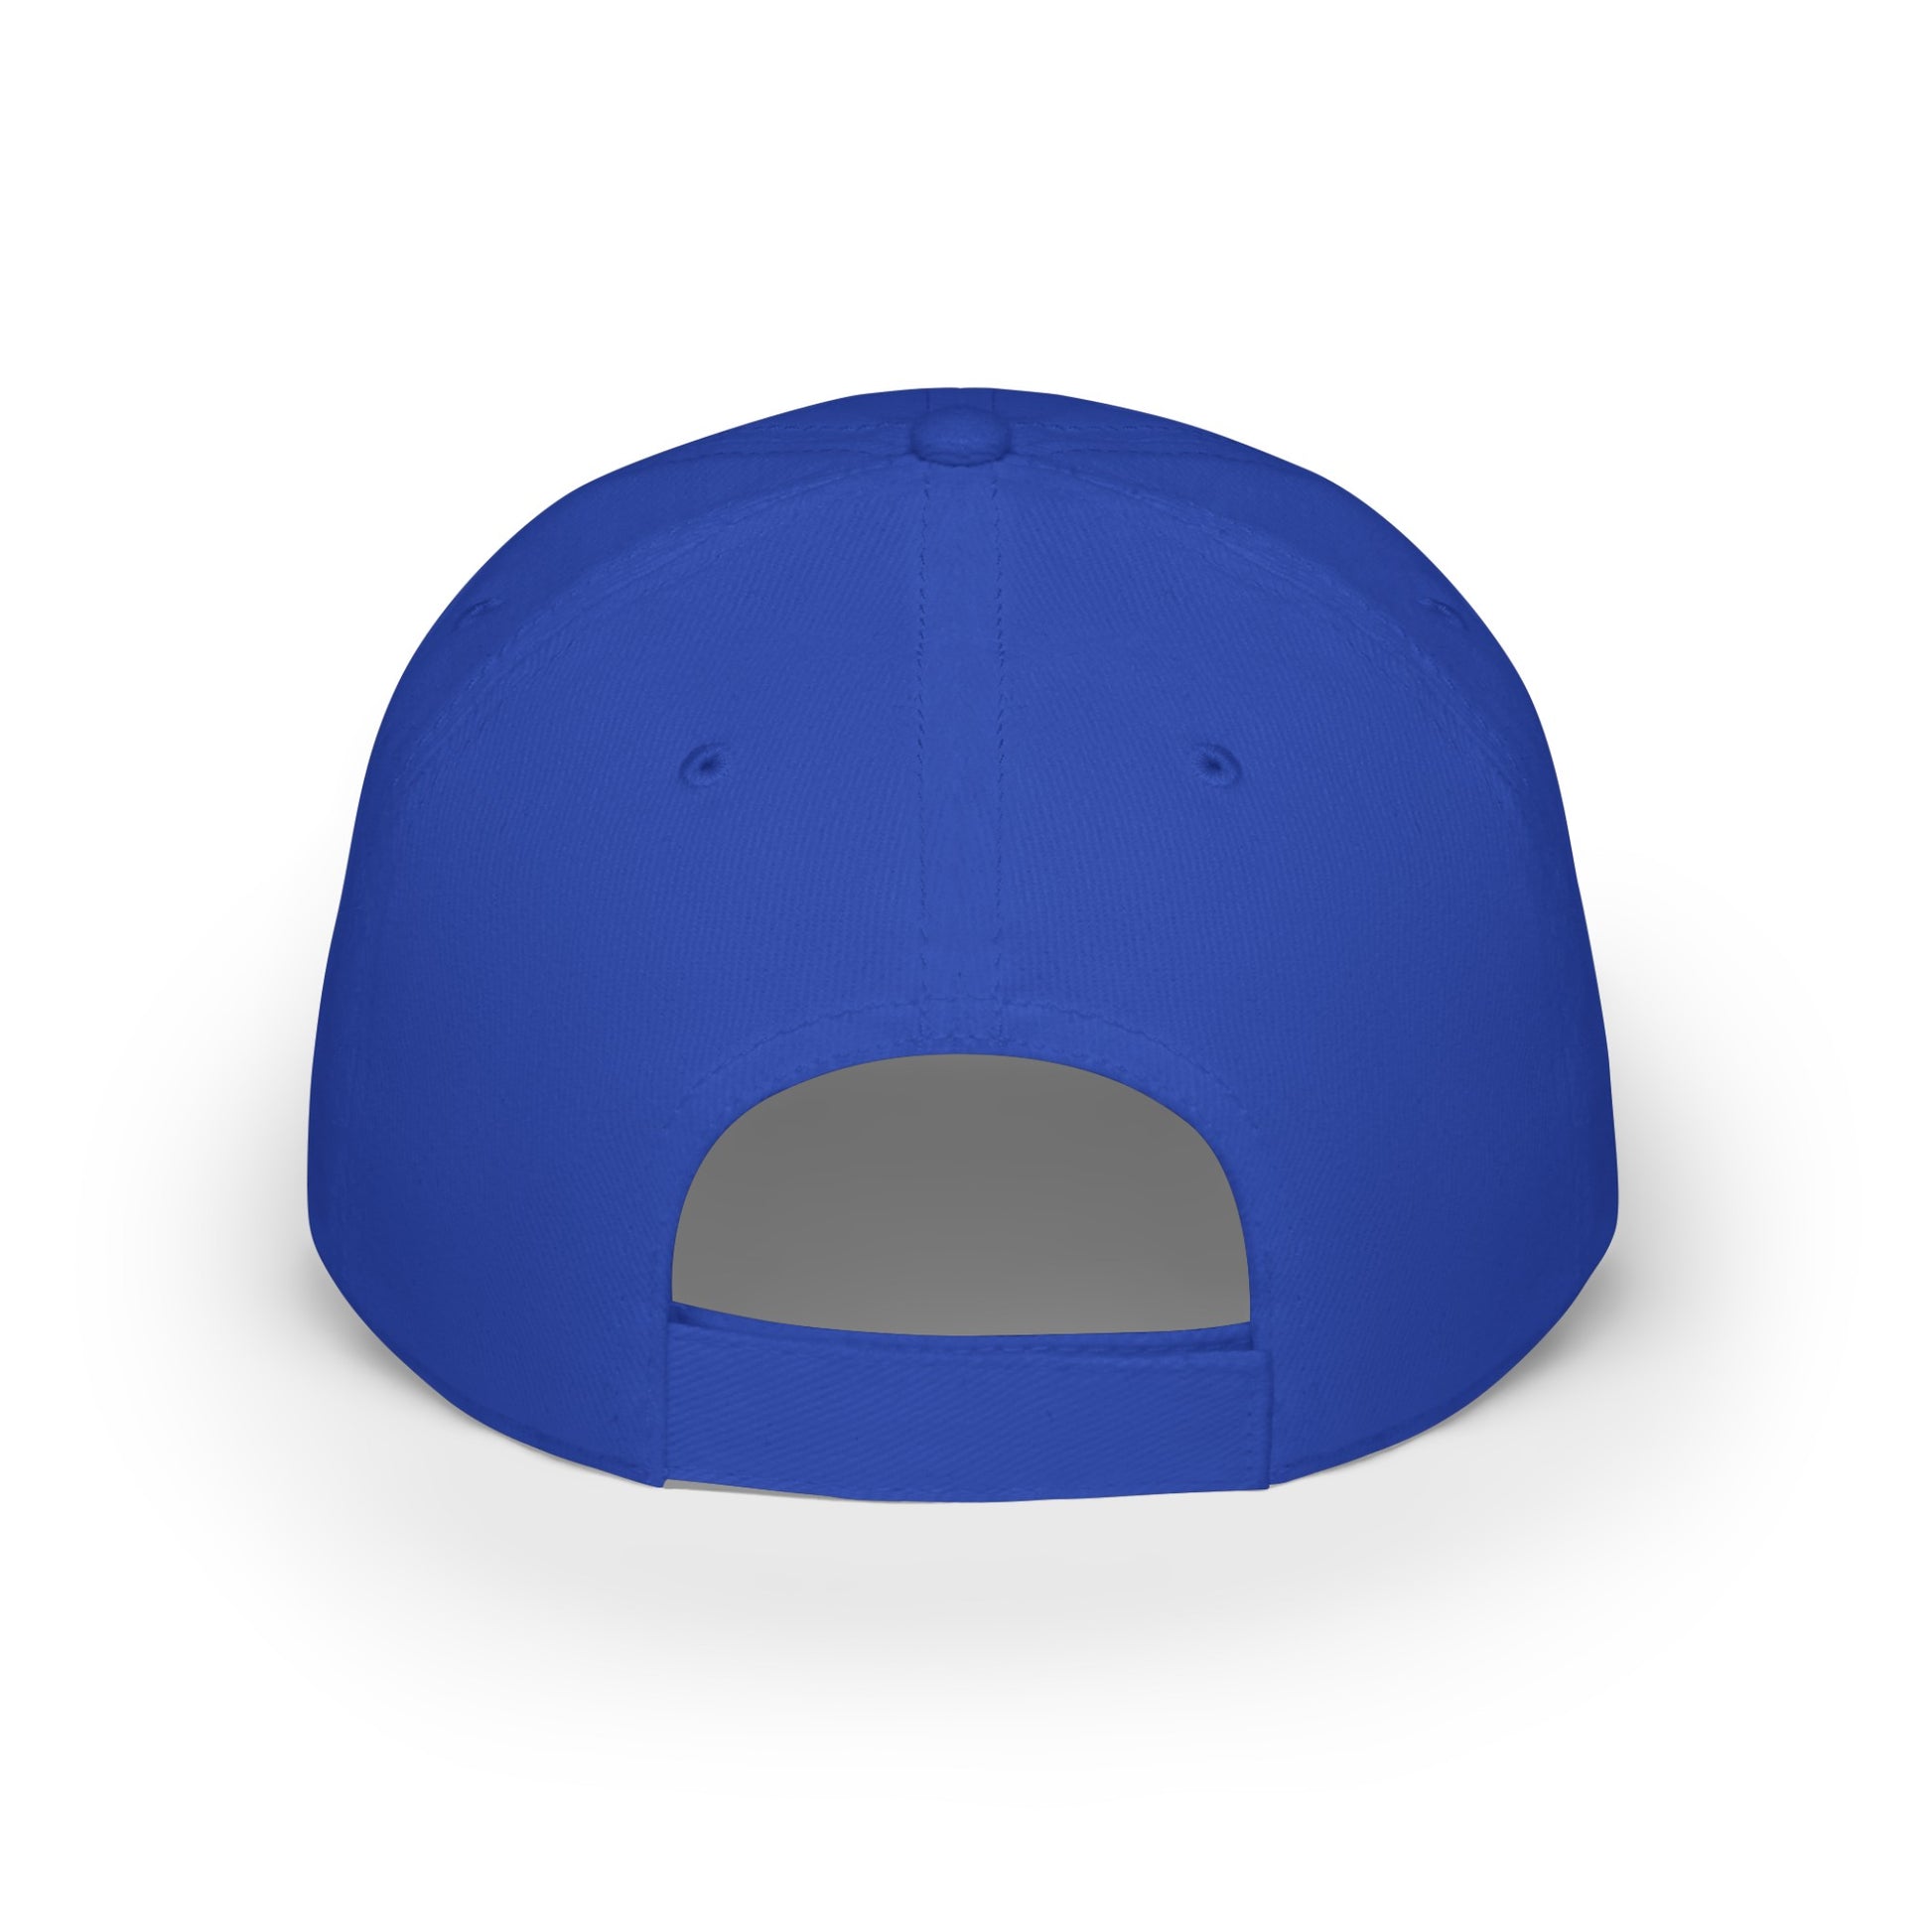 MDBTDJ#CJGRC - Low Profile Baseball Cap Tattooed Dj's Limited Edition, Hats, Tattooed Djs Shop